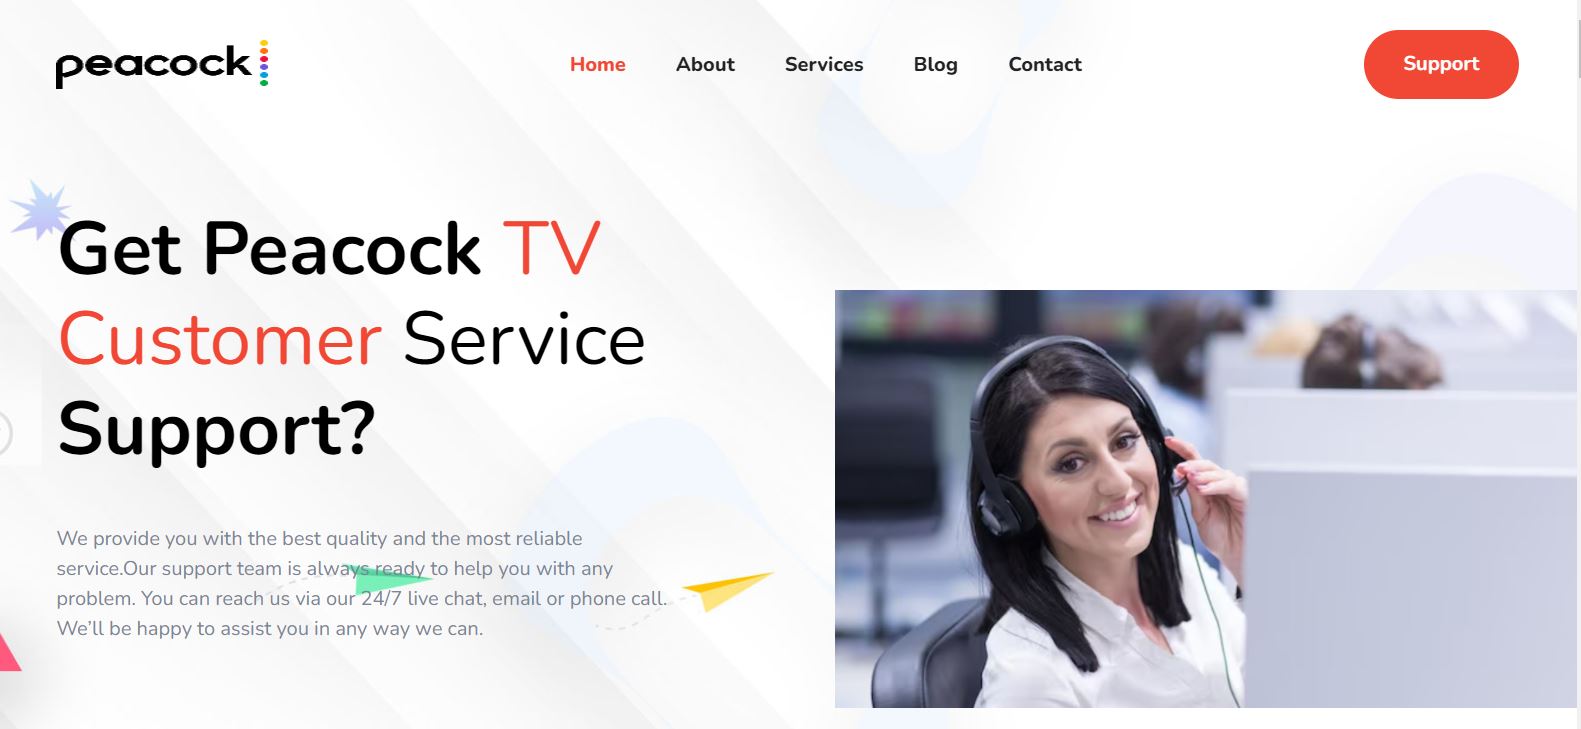 Peacock TV Help: Navigating peacocktv.com for Seamless Assistance